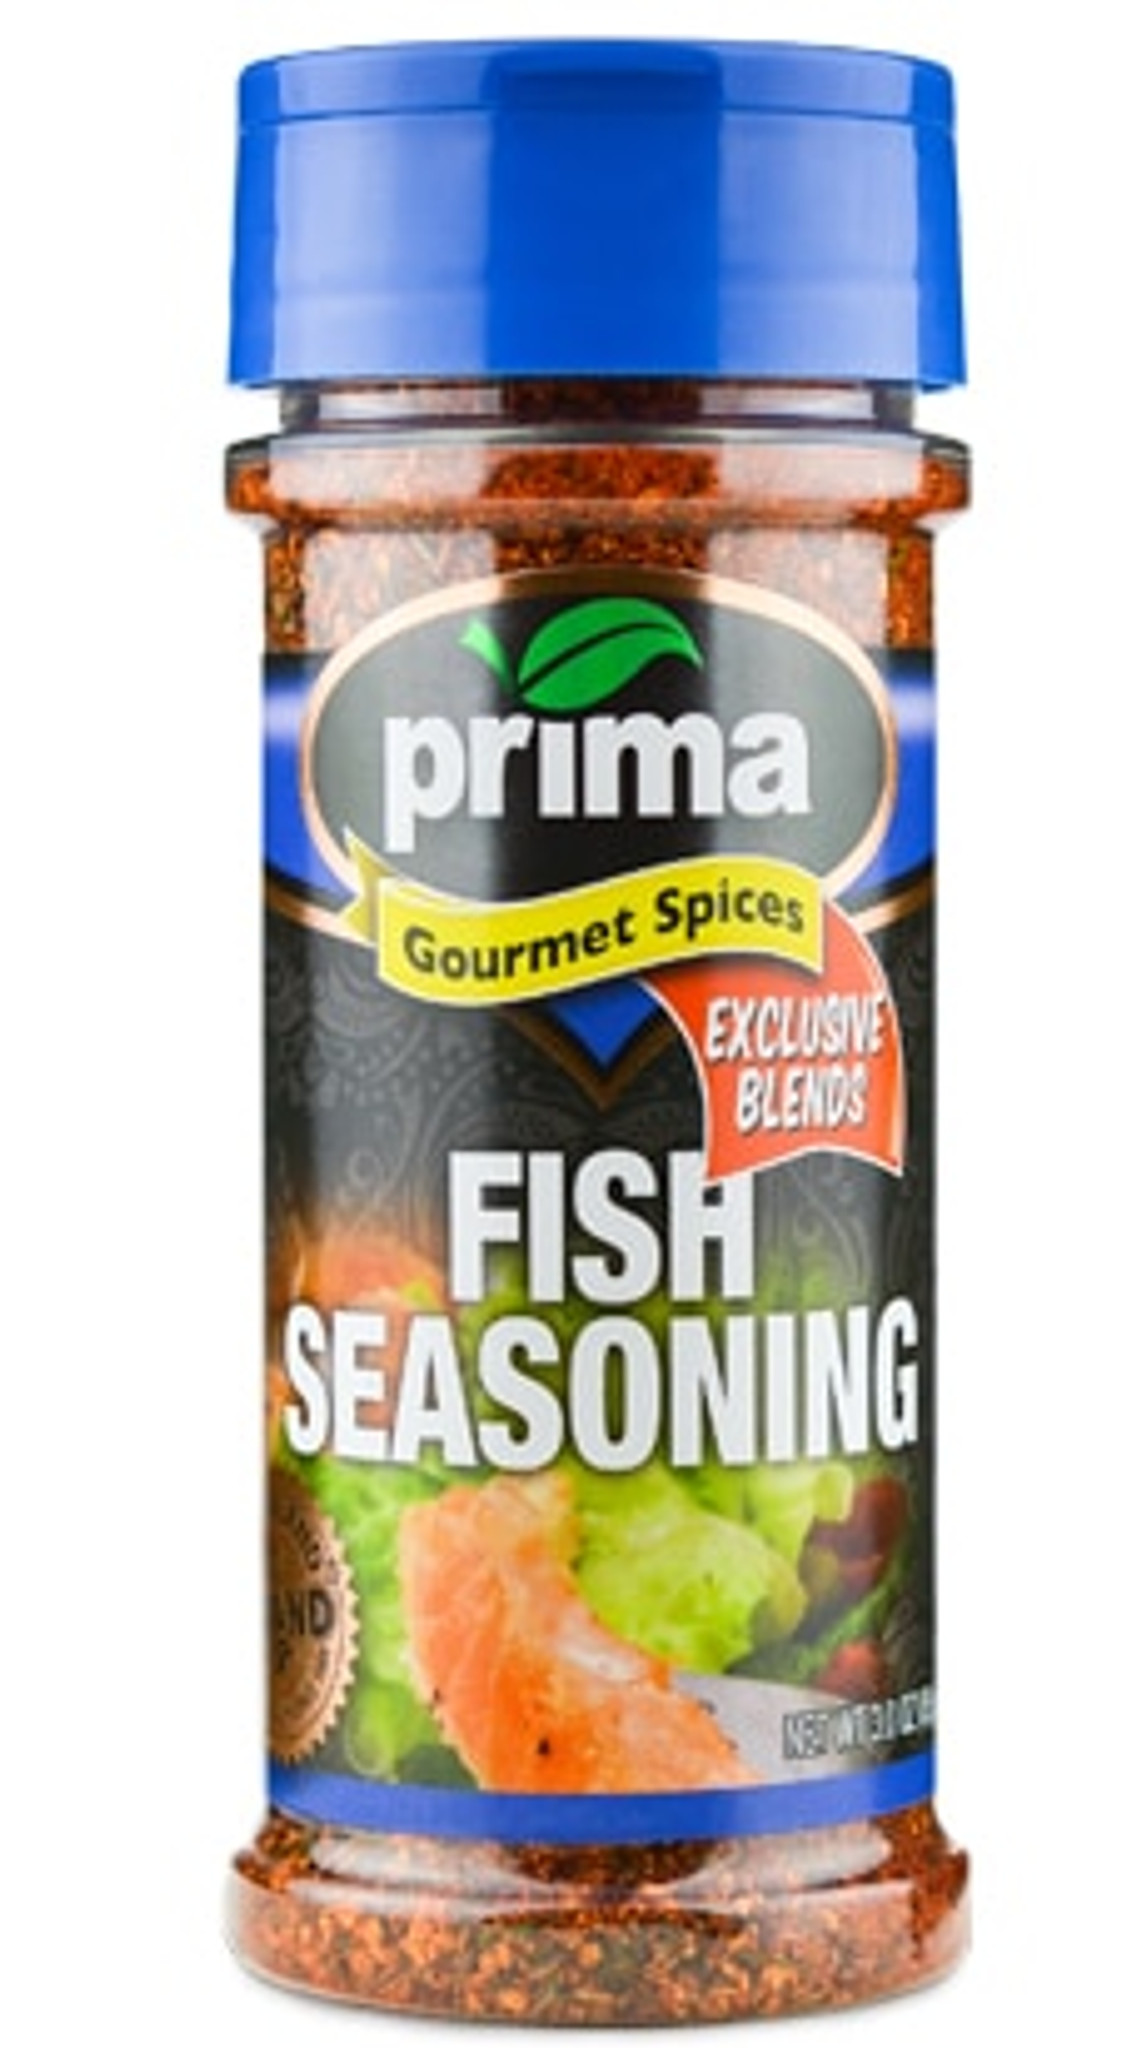 seasoning for fish